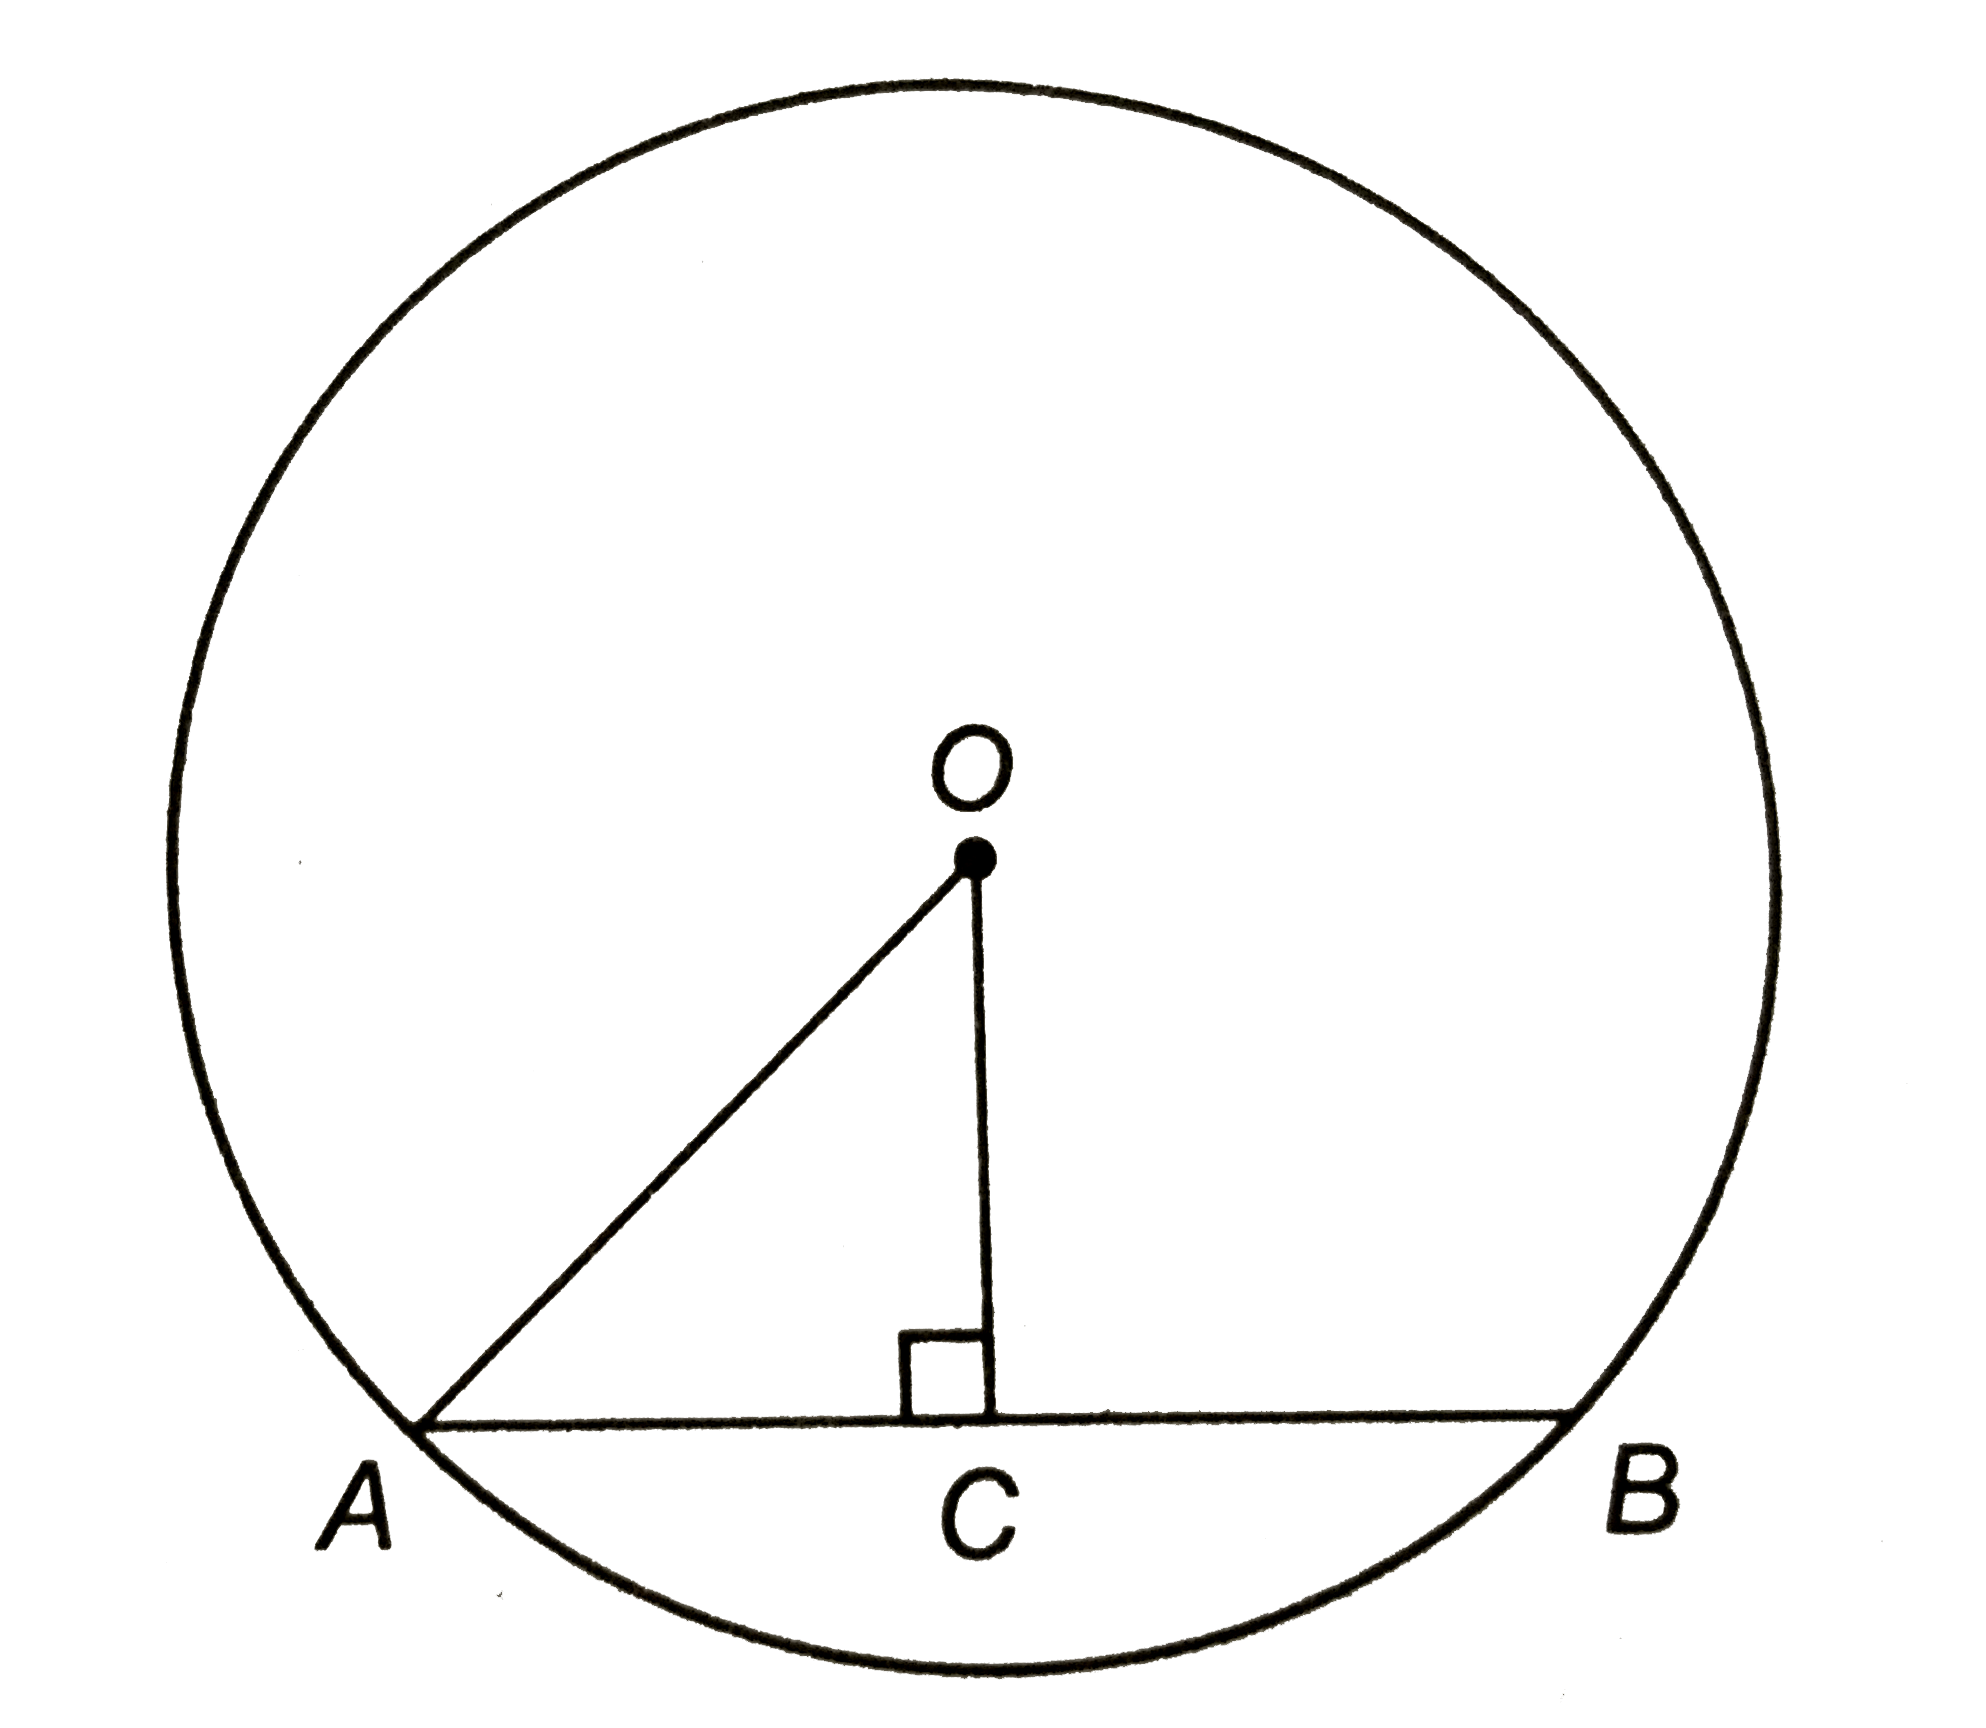 (a) एक वृत्त की त्रिज्या 10 सेमी और केन्द्र से वृत्त की एक जीवा की लम्बवत दूरी 8 सेमी है | जीवा की लम्बाई ज्ञात कीजिए |   (b) एक वृत्त की त्रिज्या 10 सेमी है | इसकी एक जीवा की लम्बाई 16 सेमी है | केन्द्र से इस जीवा पर लम्ब की लम्बाई ज्ञात कीजिए |   (c) संलग्न चित्र में 'O' वृत्त का केन्द्र है | वृत्त की त्रिज्या 17 सेमी है, यदि OC = 8 सेमी, तो जीवा AB की लम्बाई ज्ञात कीजिए |      (d) संलग्न चित्र में